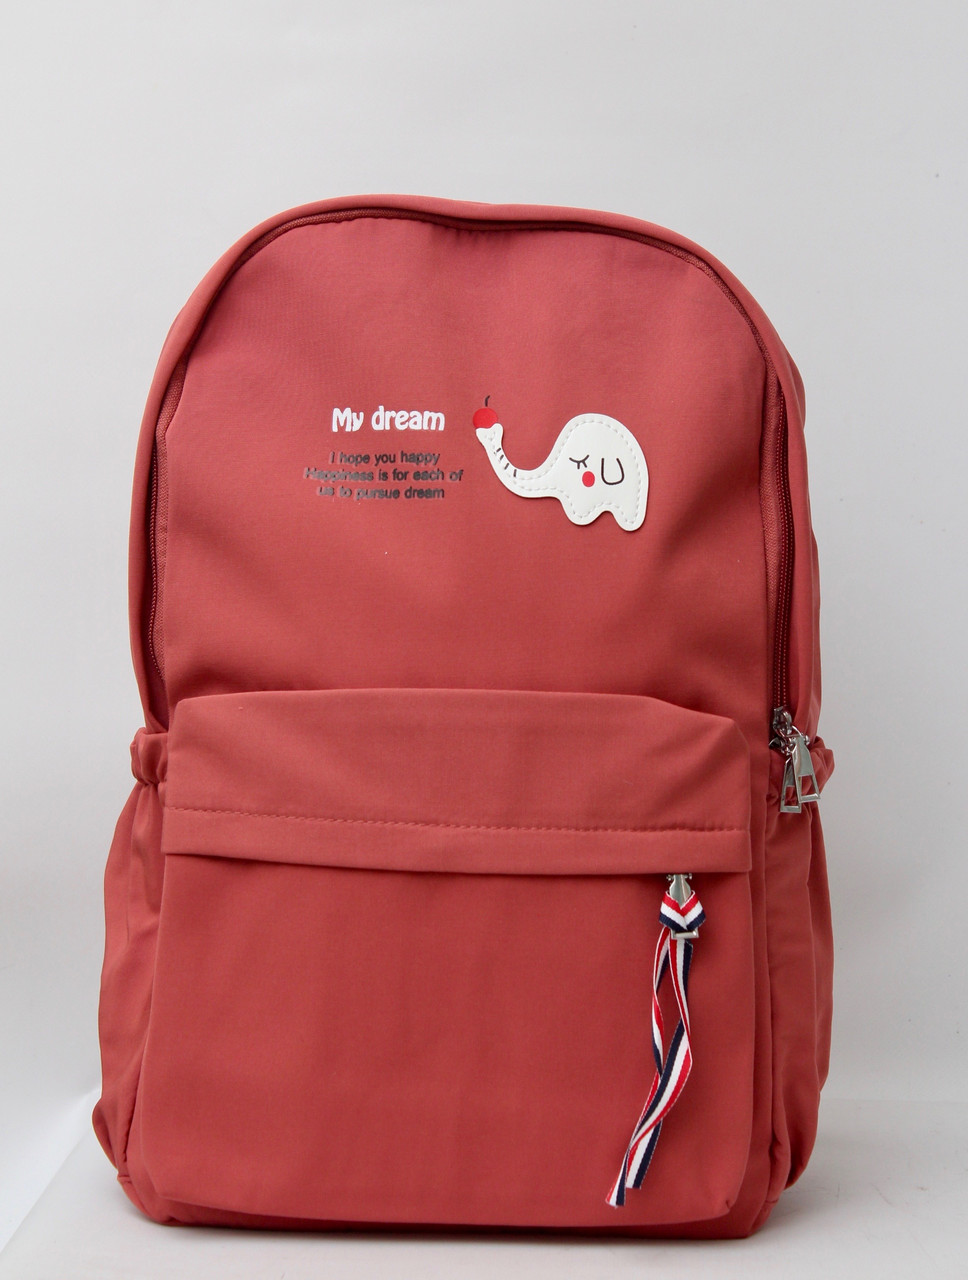 

Шкільний рюкзак для підлітка дівчинки / Школьный рюкзак для подростка девочки, Желтый